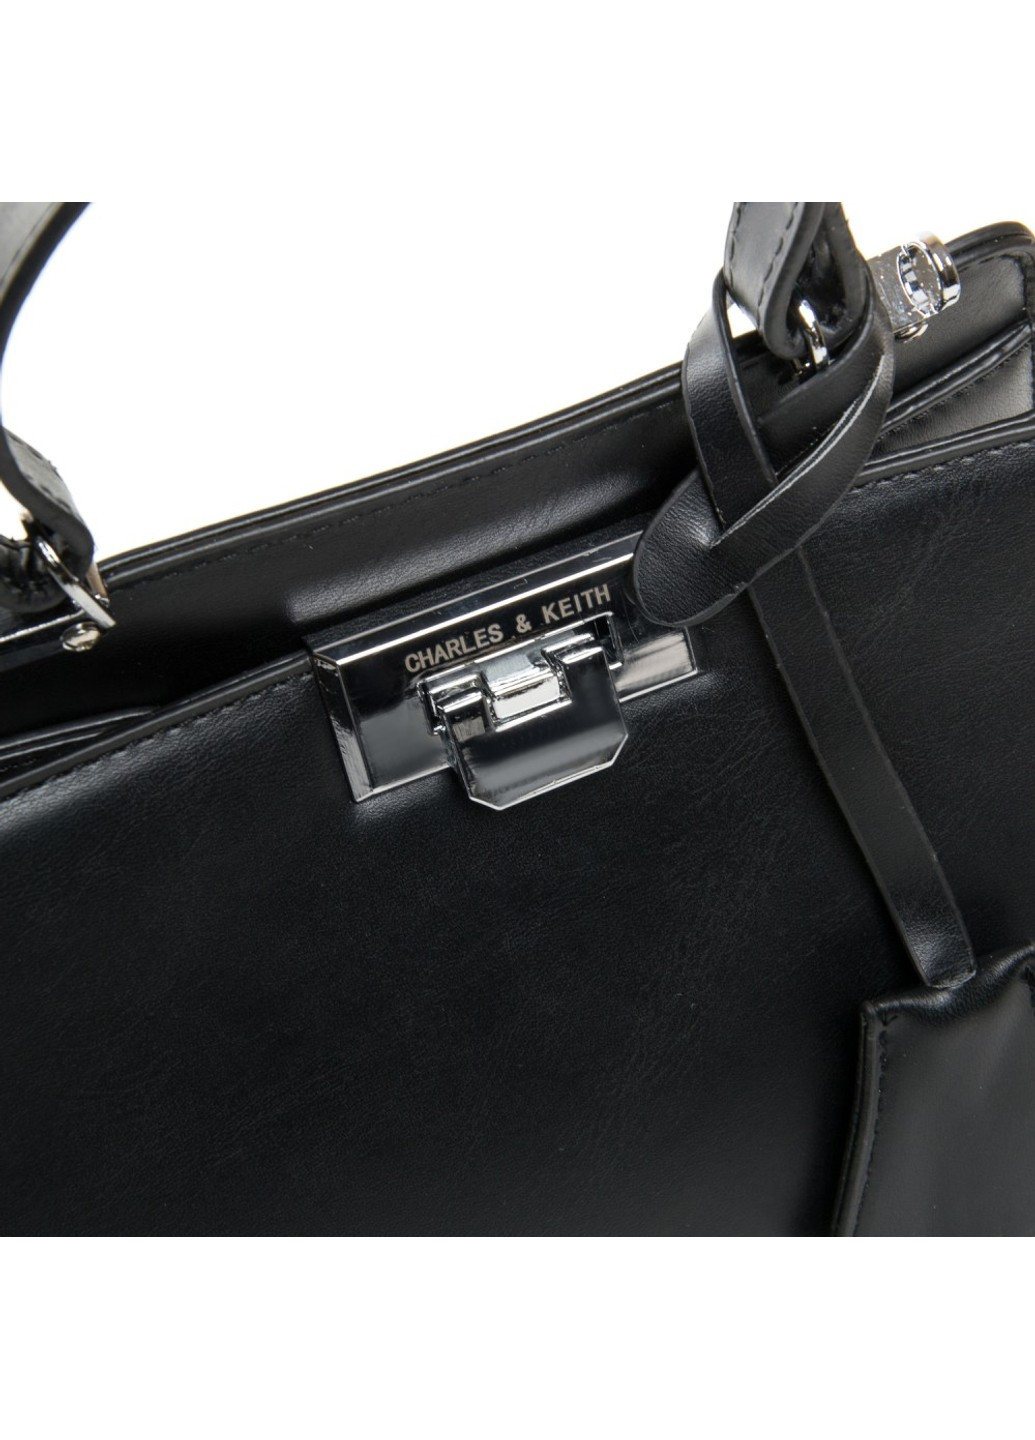 Женская сумочка из кожезаменителя 04-02 11003 black Fashion (261486695)